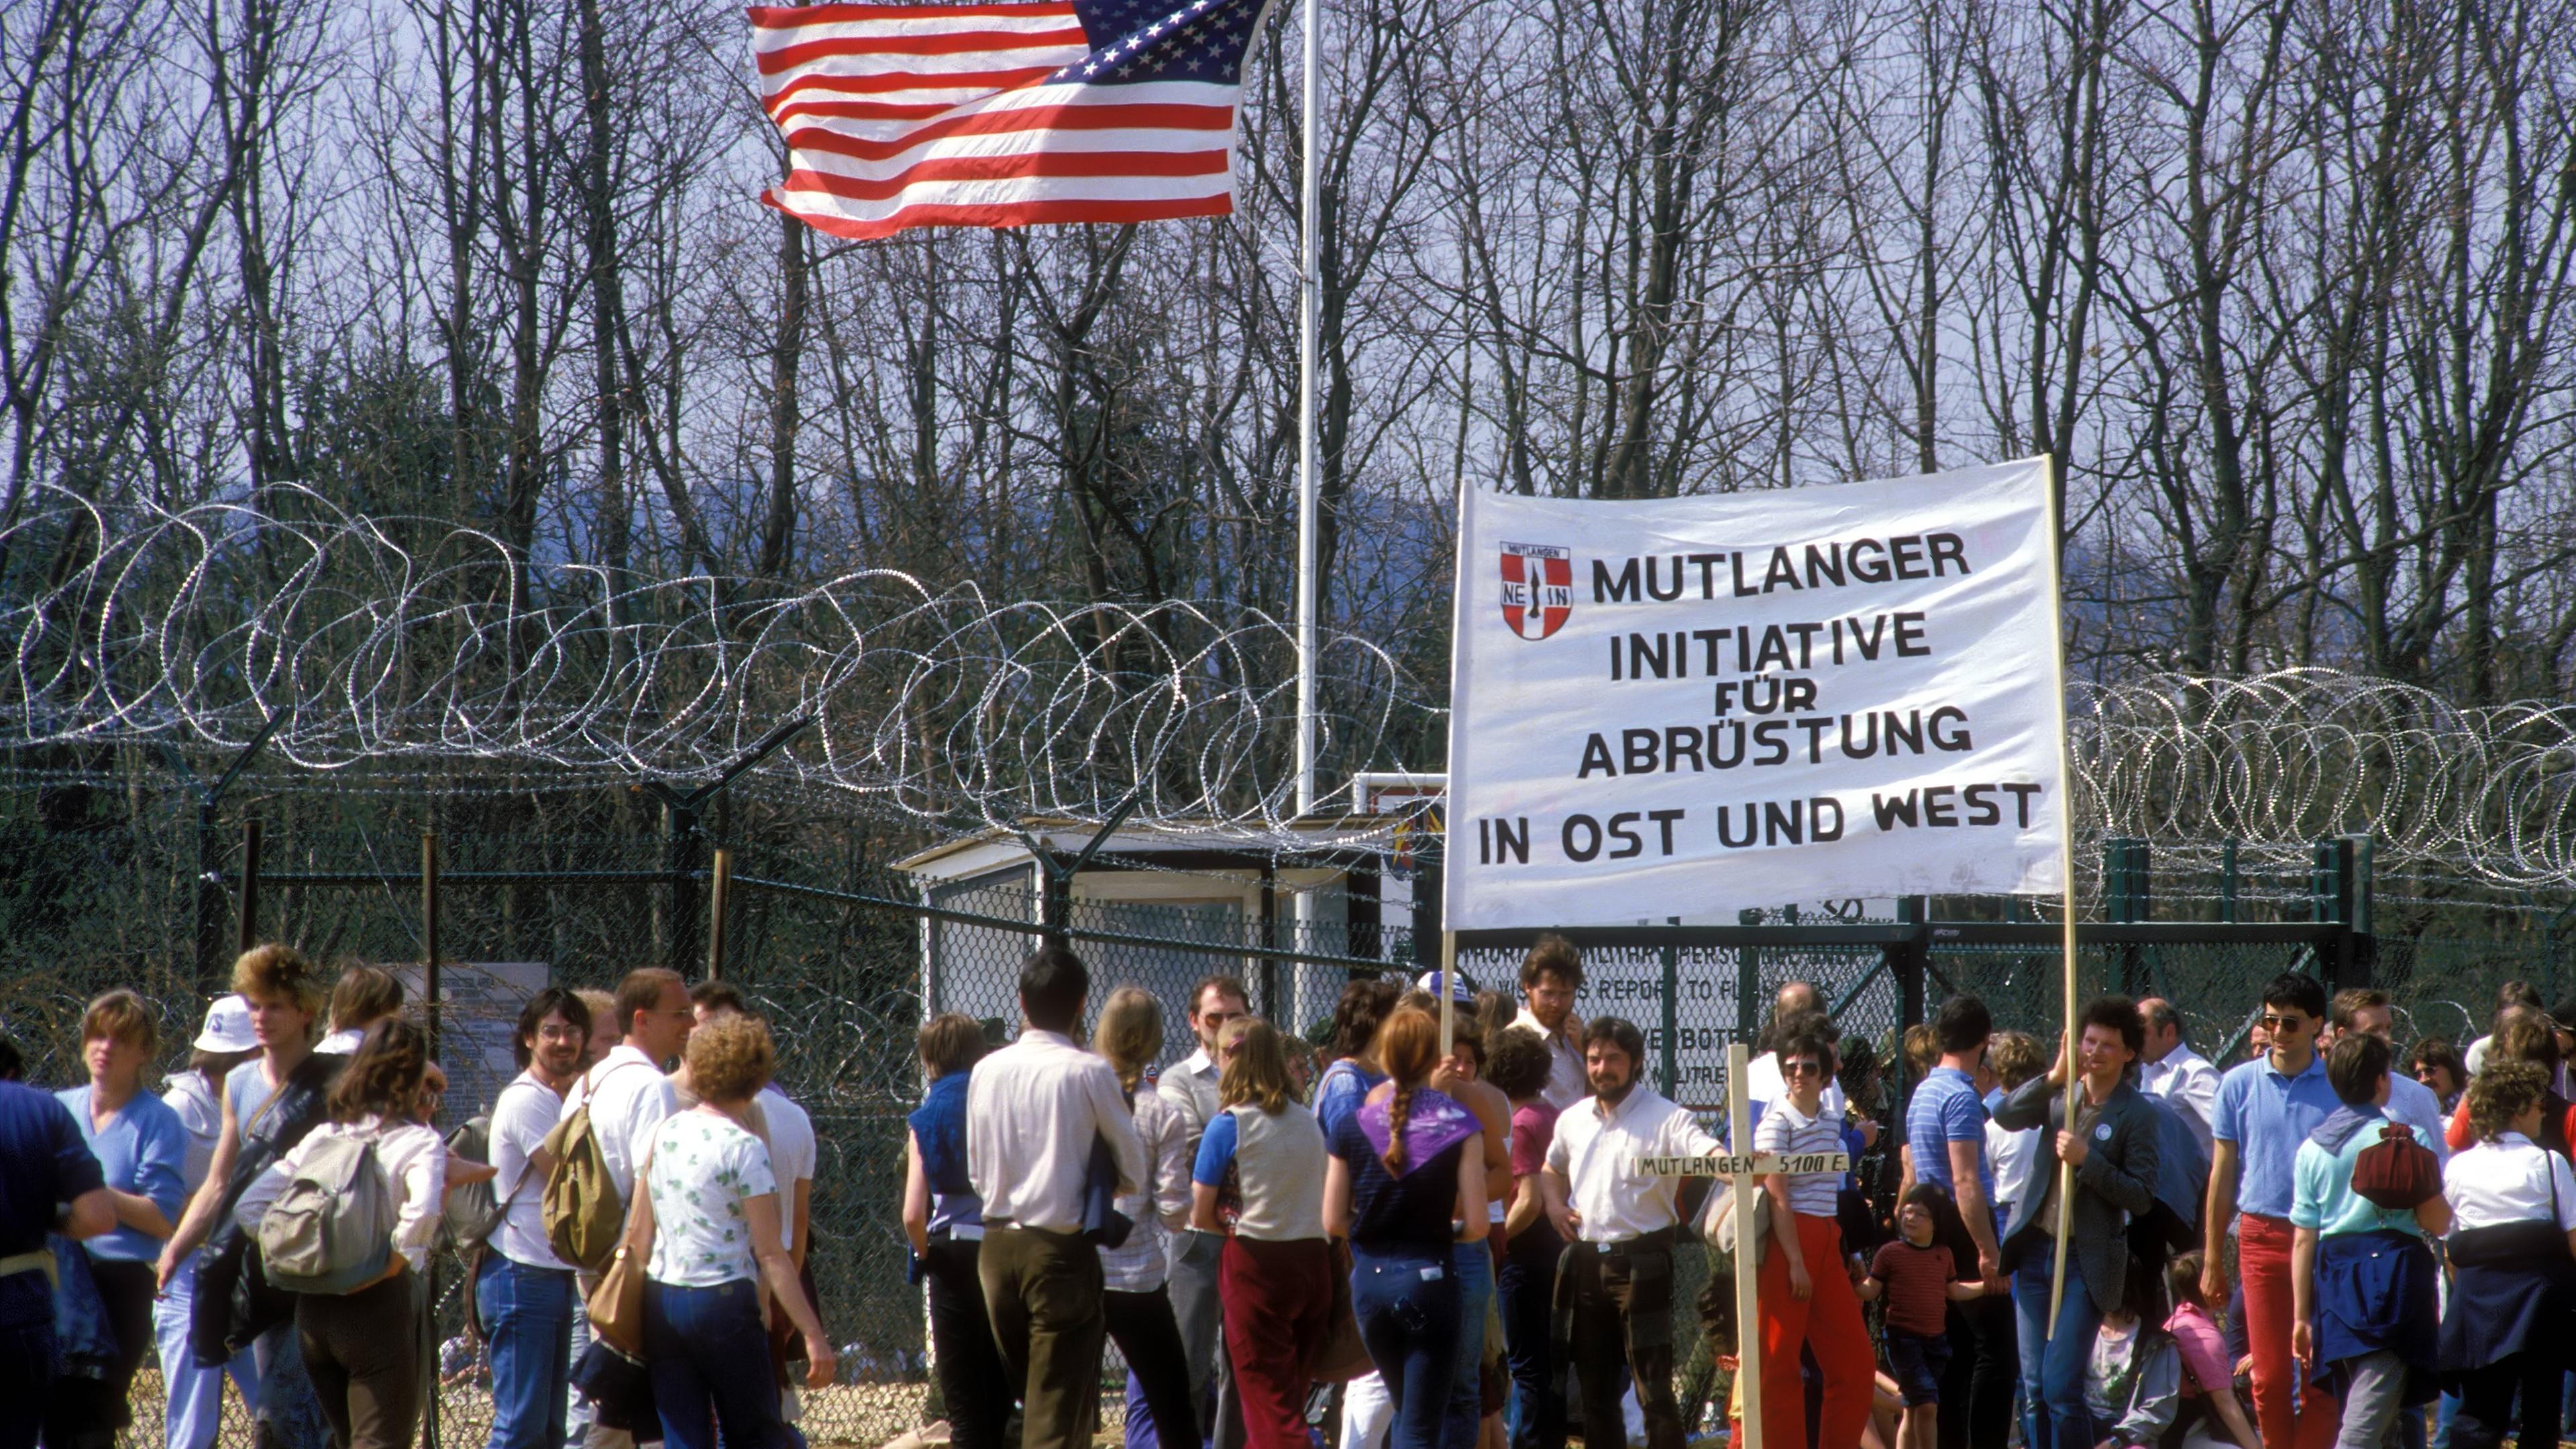 Menschen demonstrieren vor dem US-amerikanischen Militärstützpunkt in Mutlangen mit einem großen Plakat für Abrüstung.